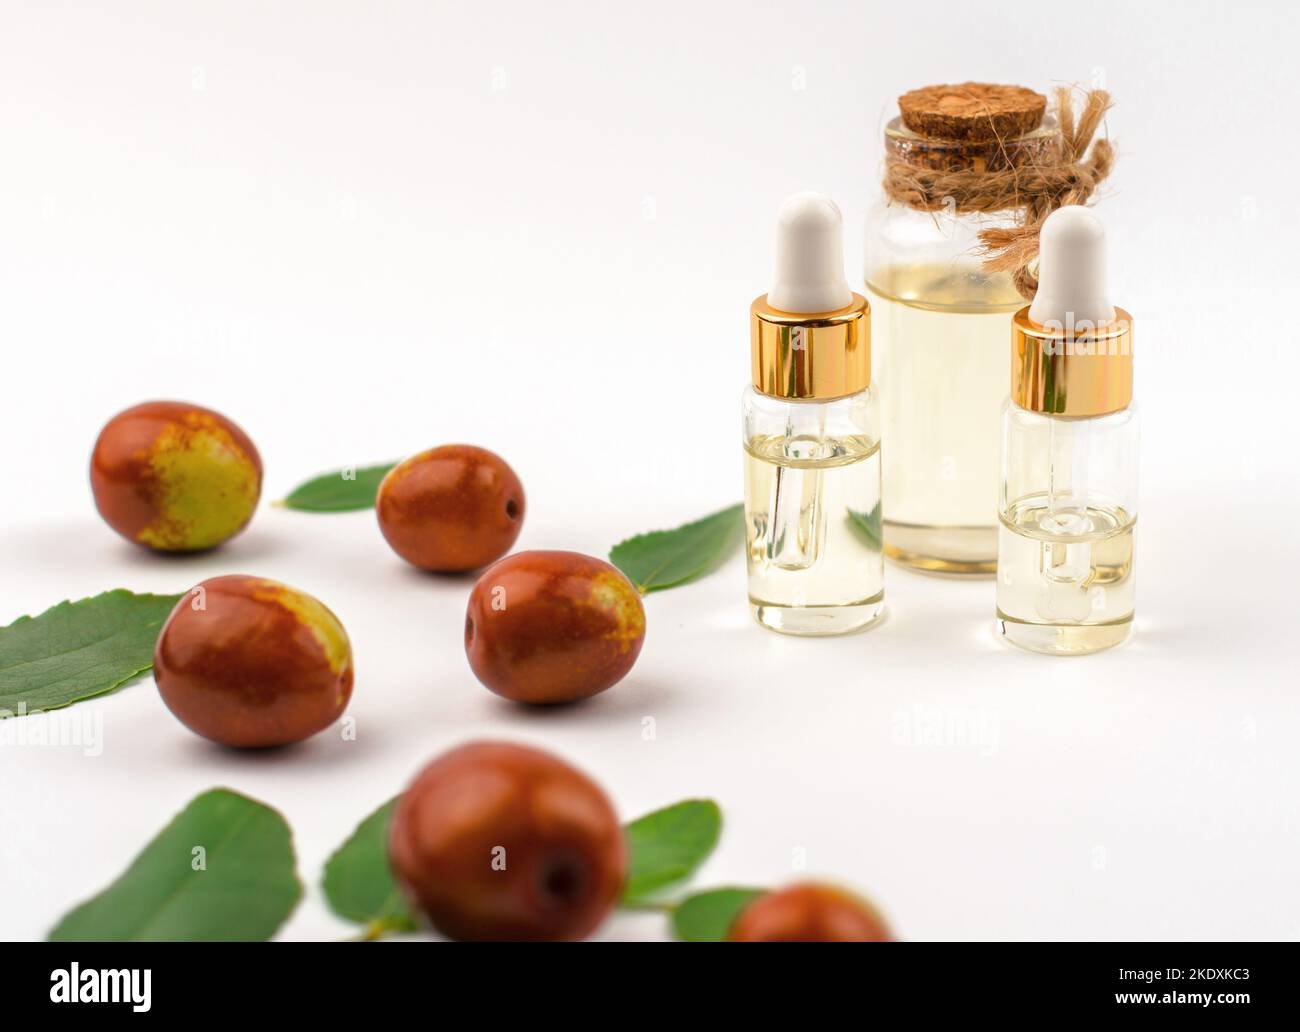 Jojoba oil and fresh jojoba fruit on white background Stock Photo